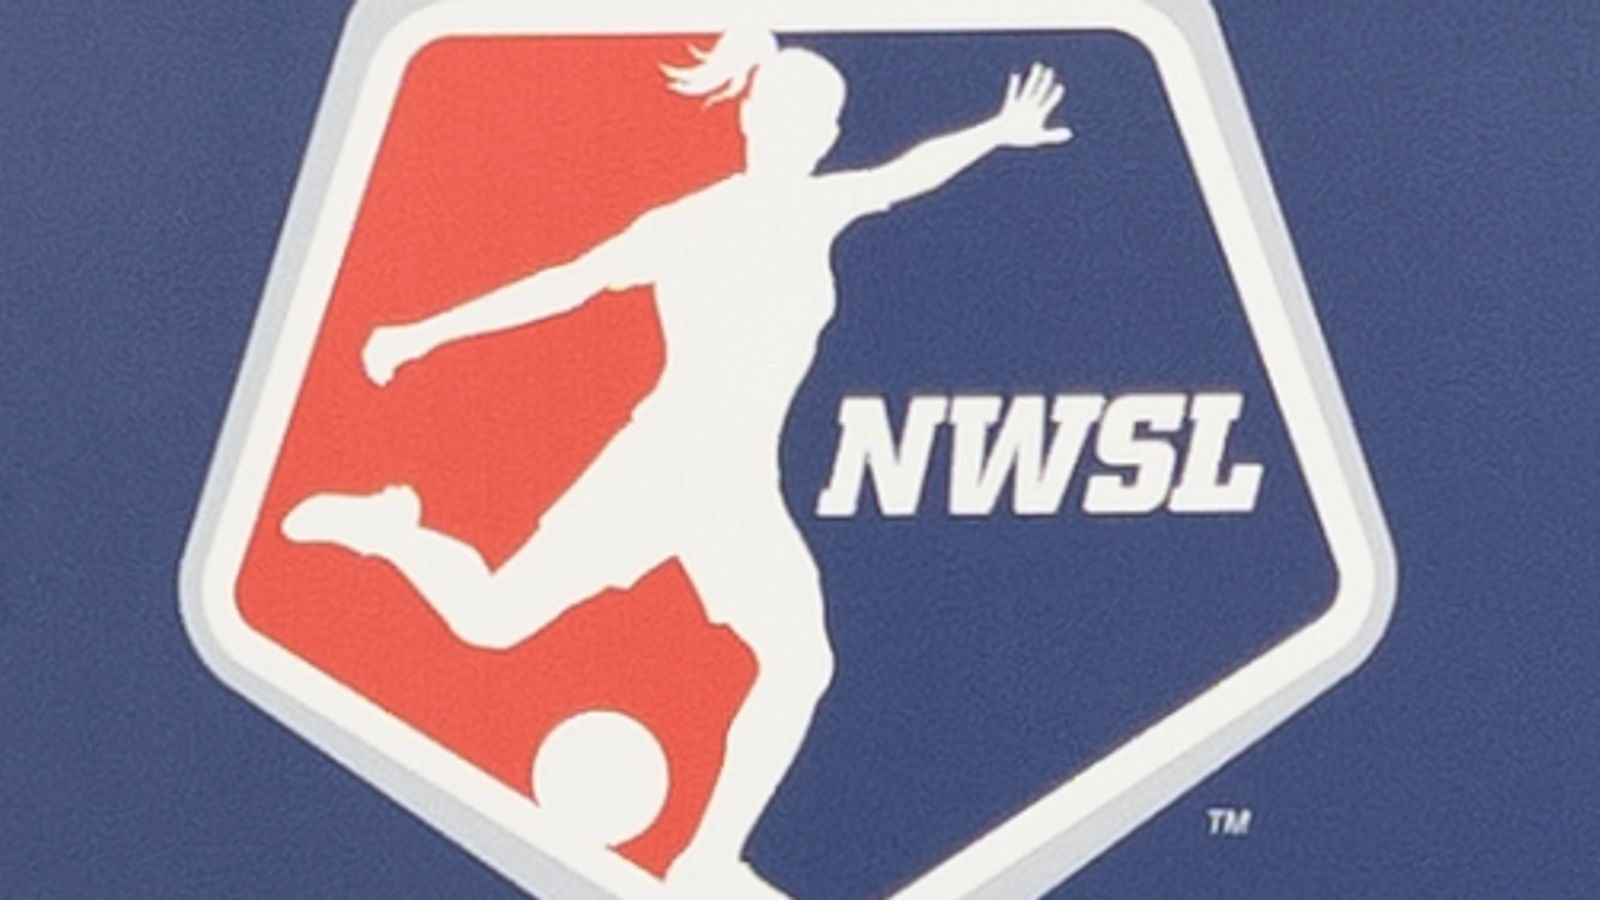 NWSL: La Liga Nacional Femenina de Fútbol sanciona de por vida a cuatro entrenadores luego de una investigación de abuso y mala conducta |  Noticias de futbol